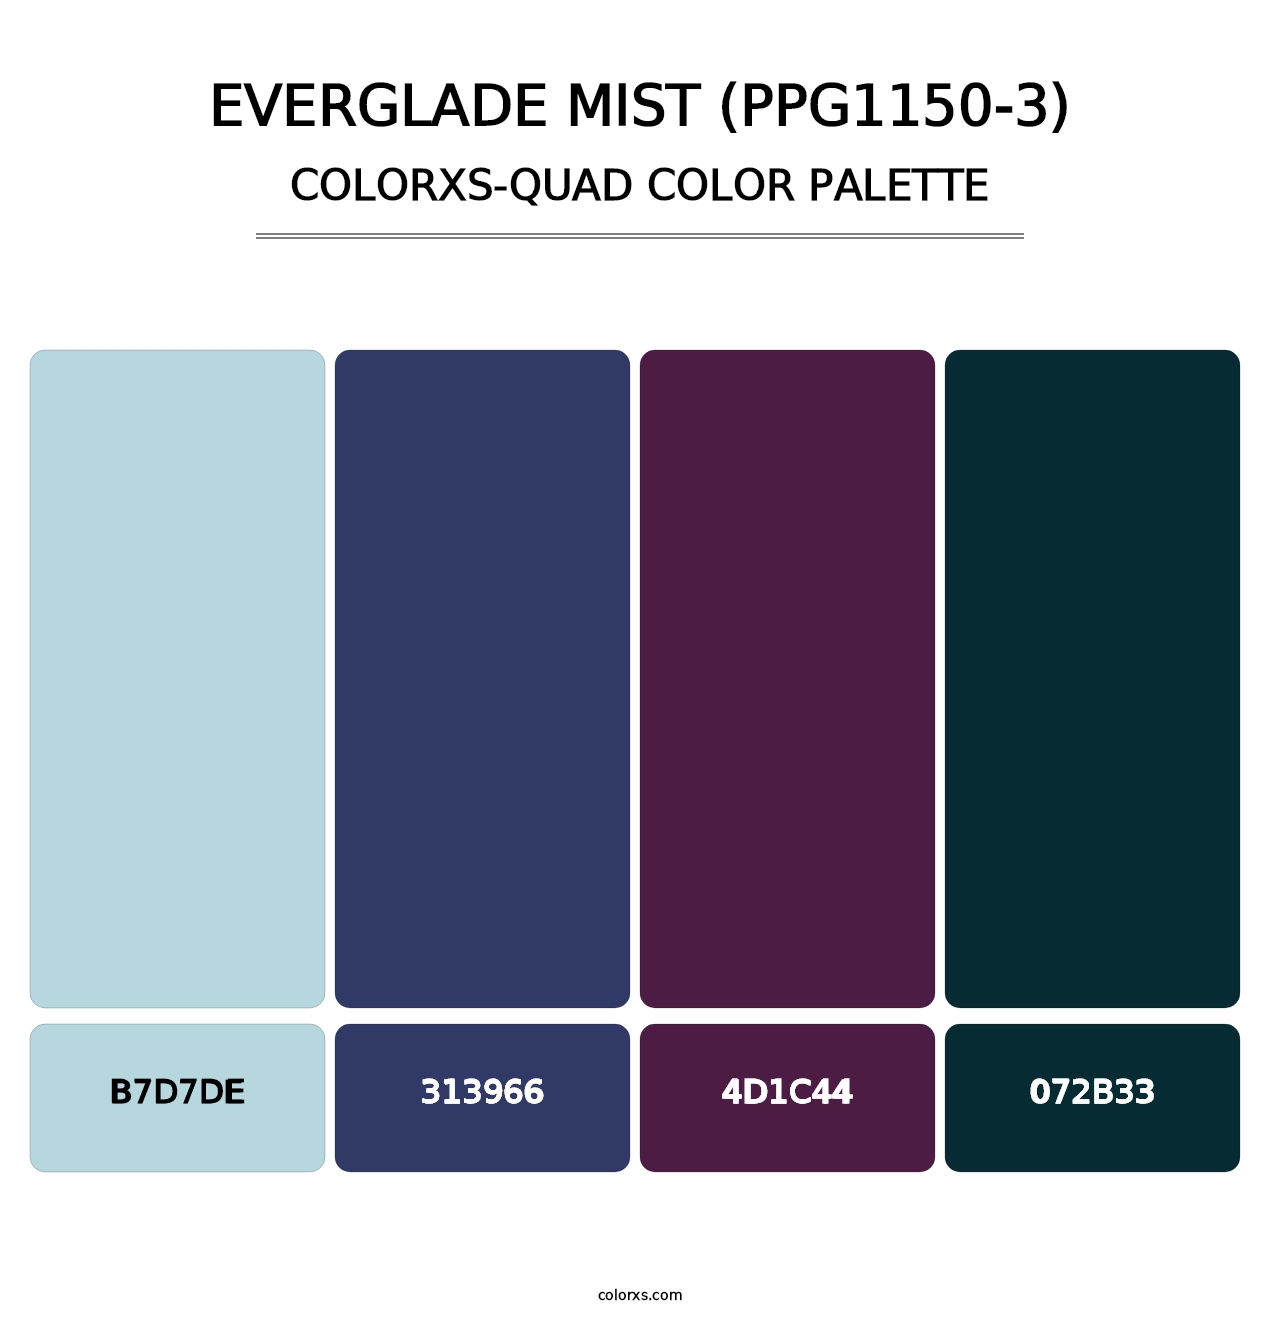 Everglade Mist (PPG1150-3) - Colorxs Quad Palette